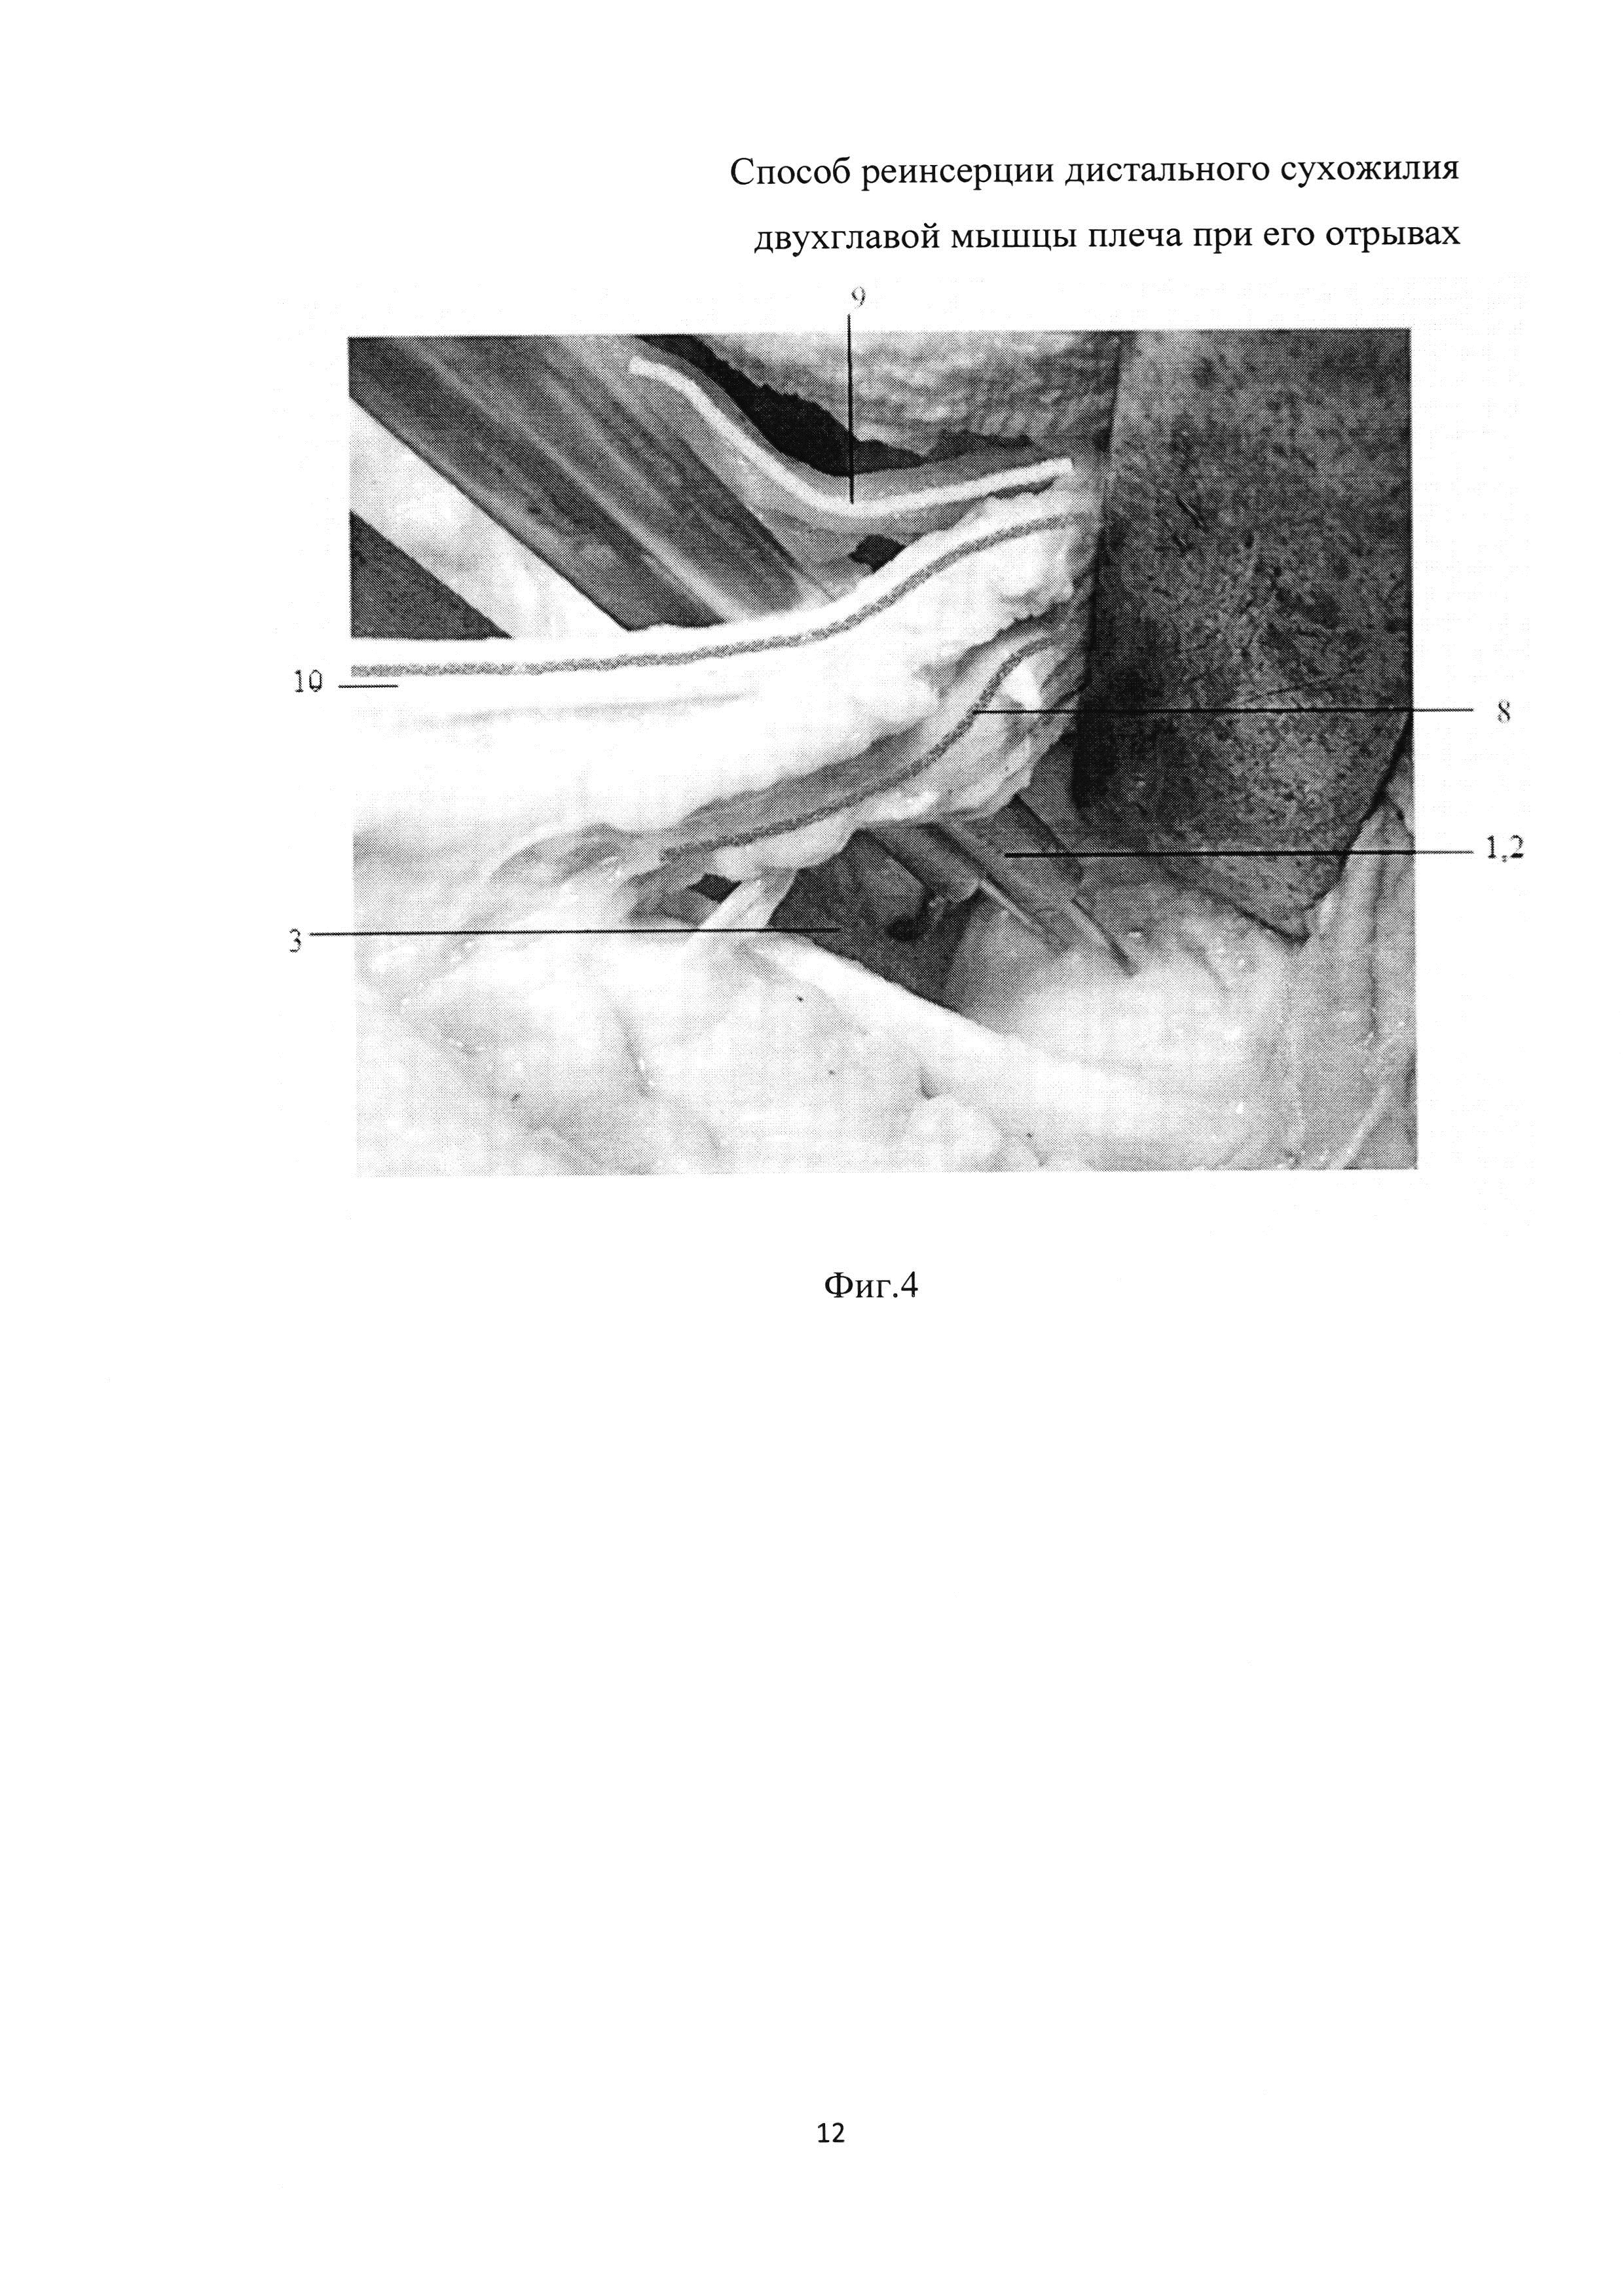 Способ реинсерции дистального сухожилия двуглавой мышцы плеча при его отрывах